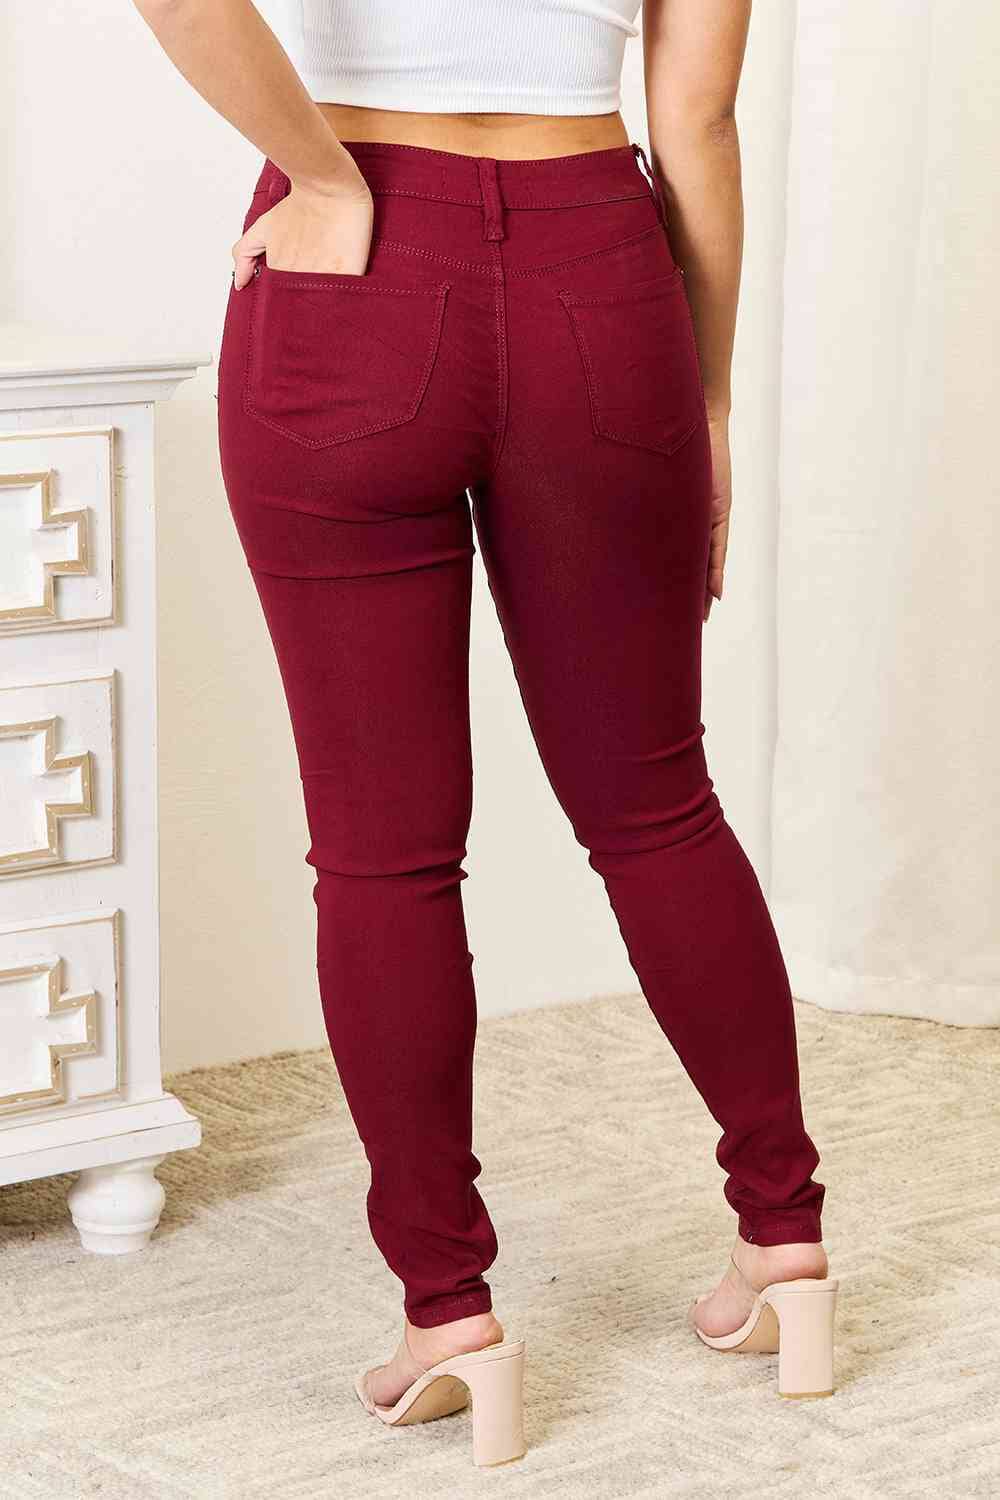 YMI Red Jeanswear Skinny Jeans with Pockets jeans jehouze 